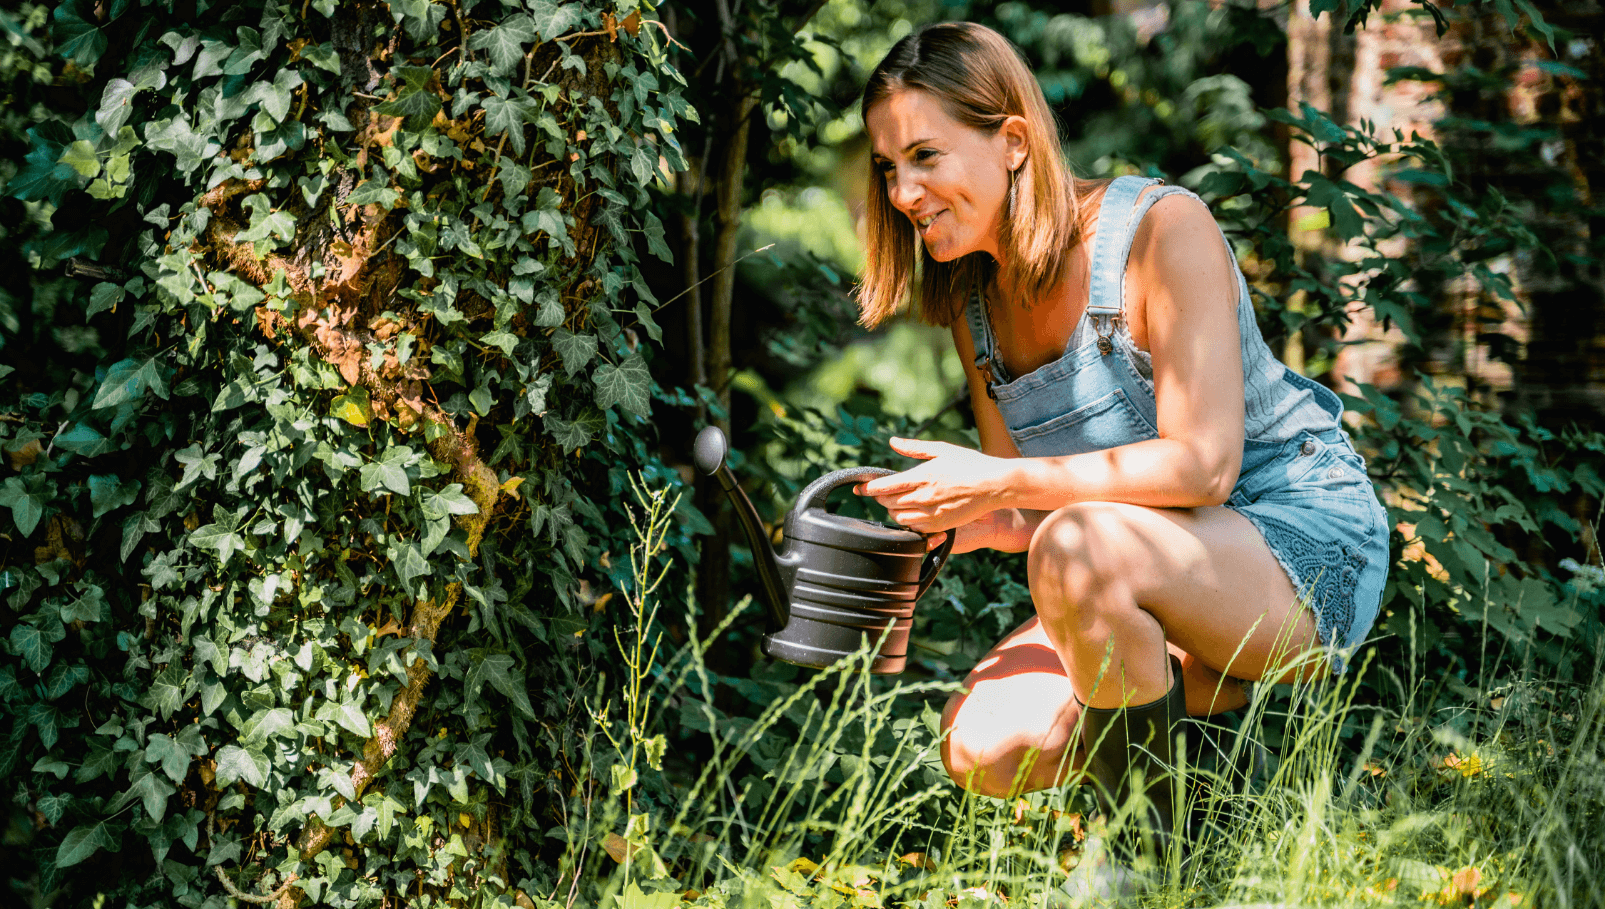 Een vrouw in spijkeroverall knielt in een weelderige tuin en geeft de planten voorzichtig water met een kleine gieter, omringd door levendig groen en met klimop bedekte bomen.